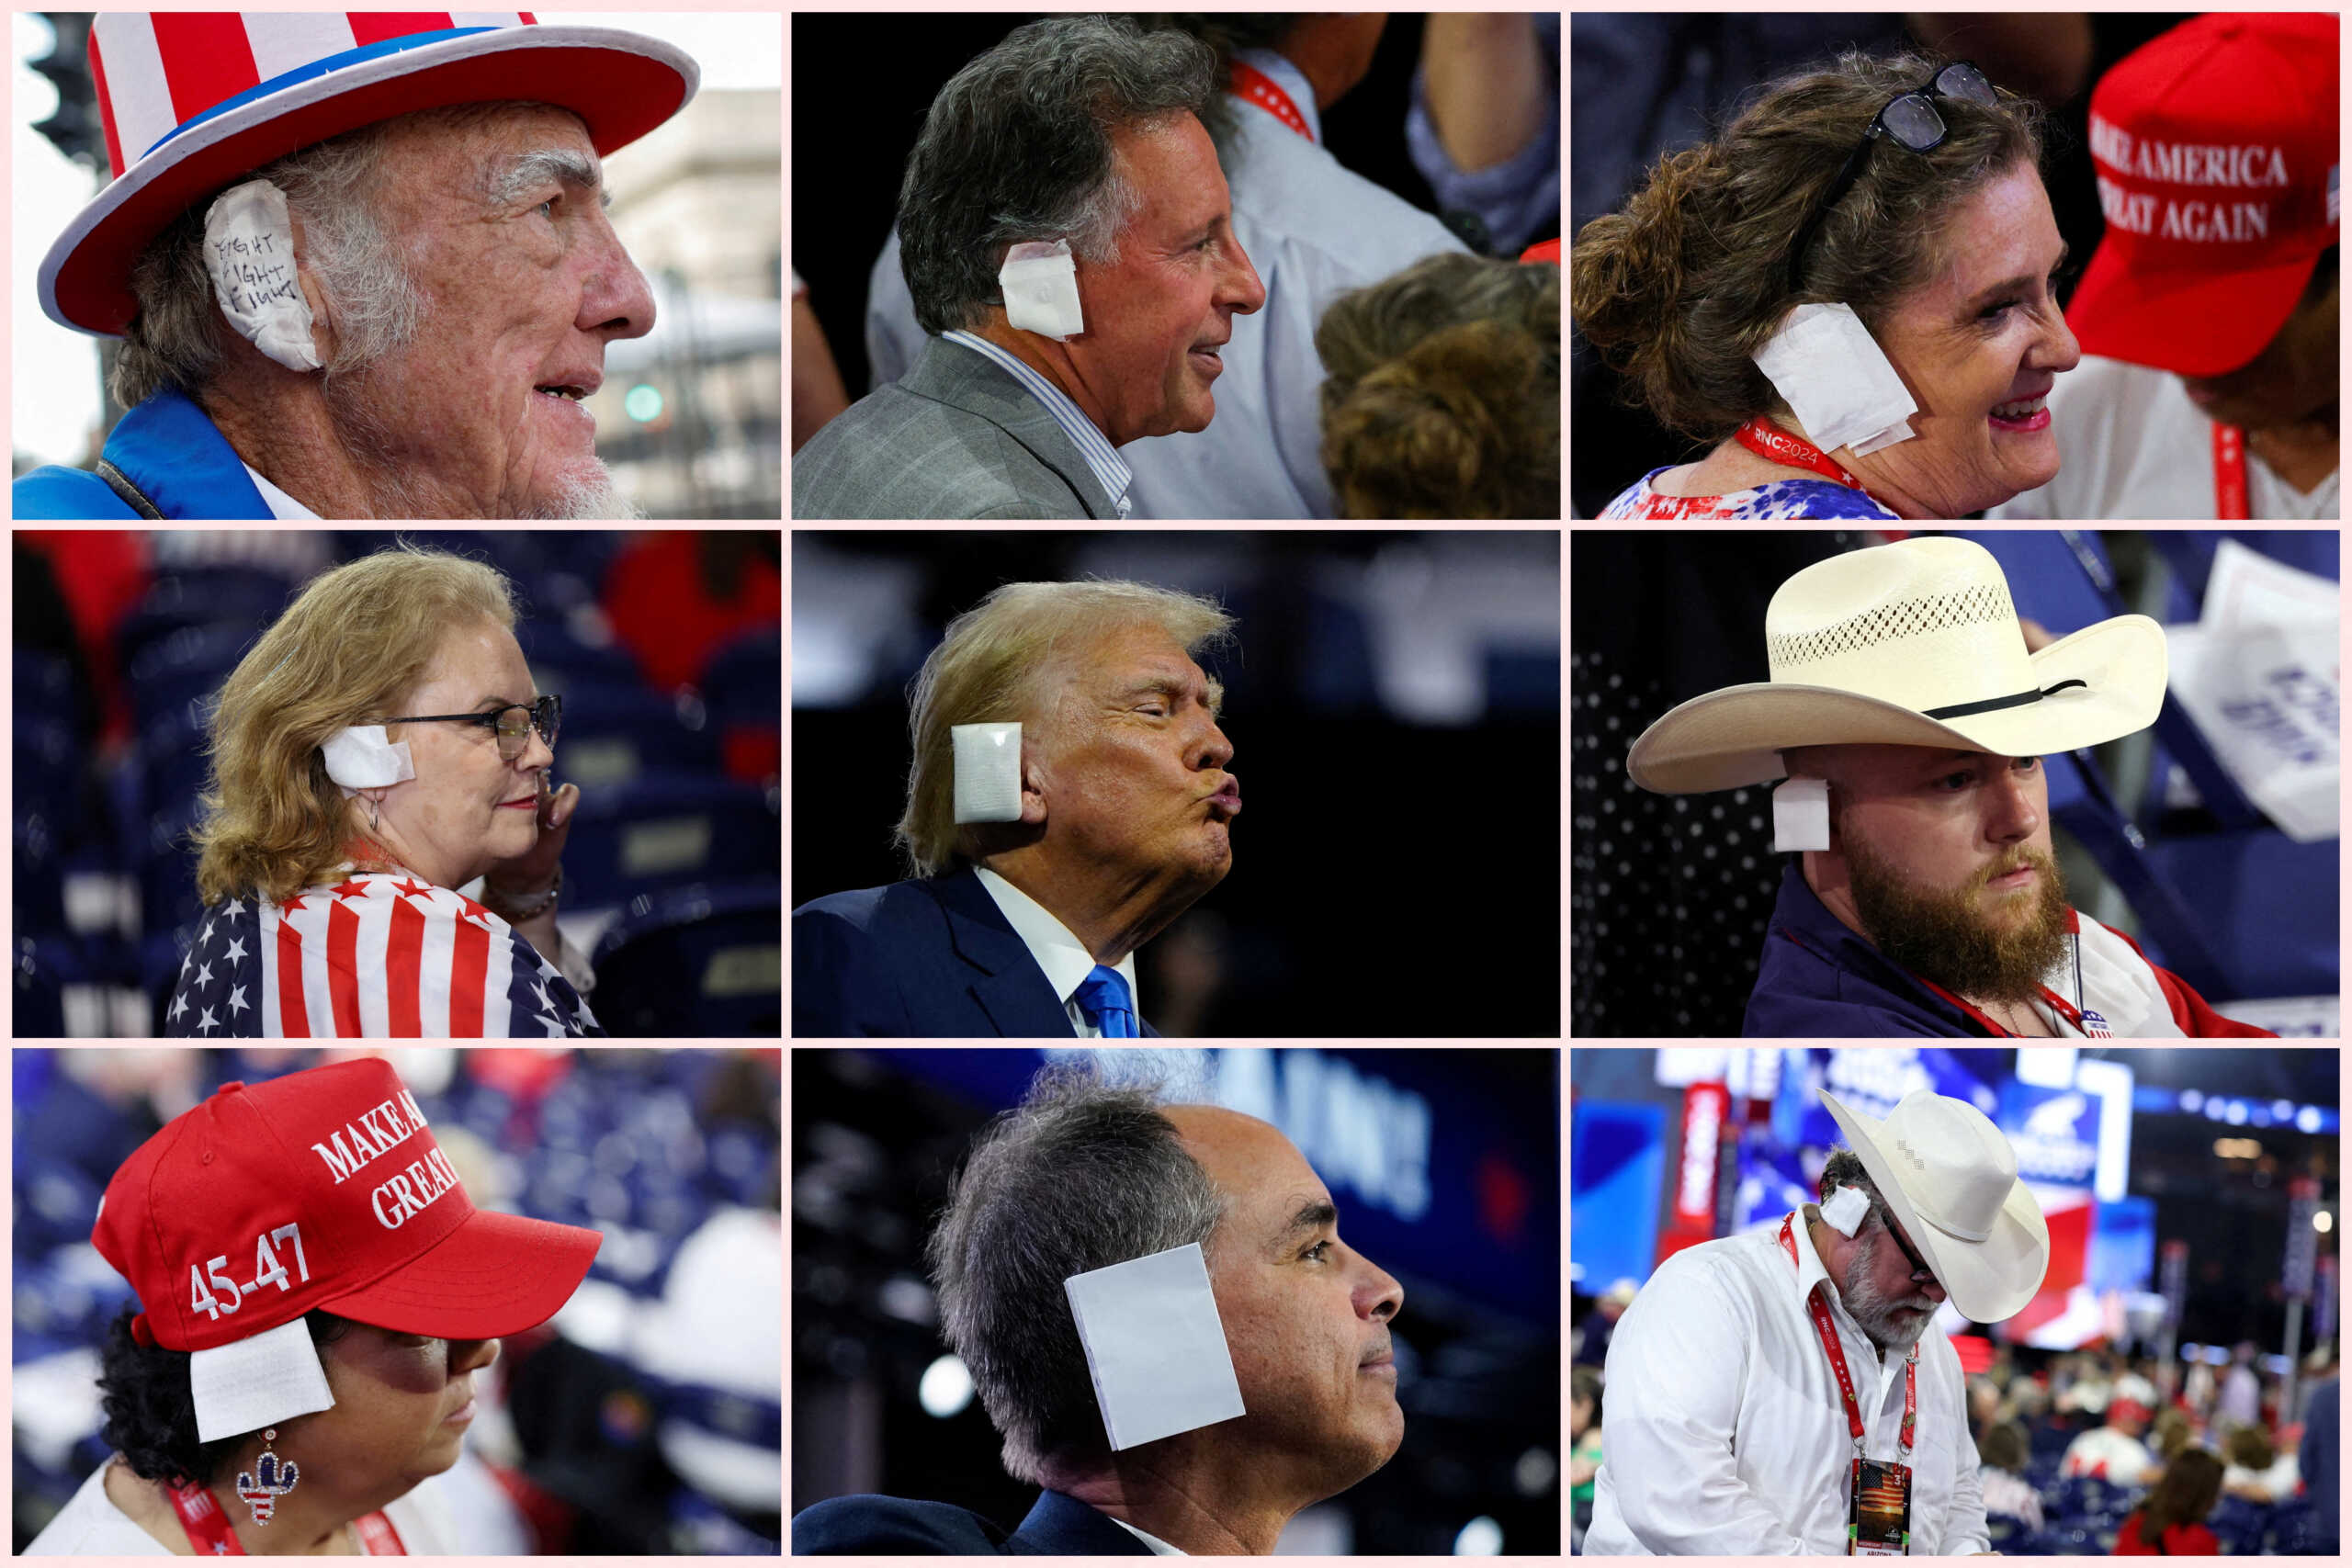 Οπαδοί του Ντόναλντ Τραμπ εμφανίστηκαν με επίδεσμο στο αυτί στο Συνέδριο των Ρεπουμπλικανών